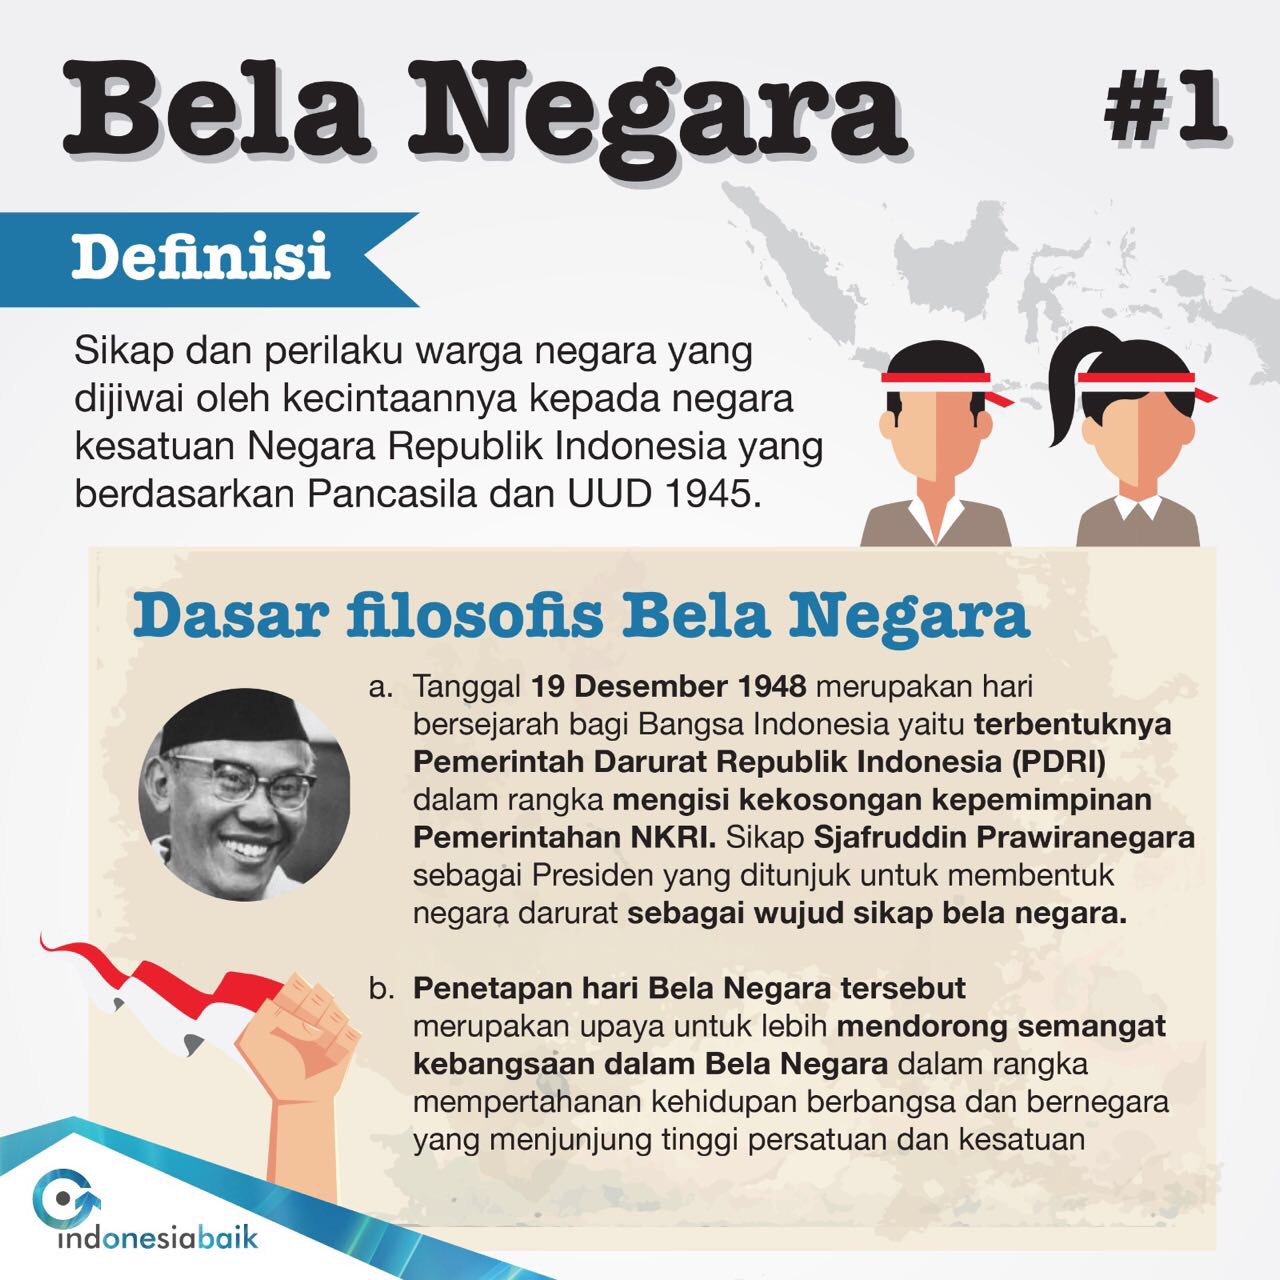 Infografis Bela Negara - Pemkab Manggarai